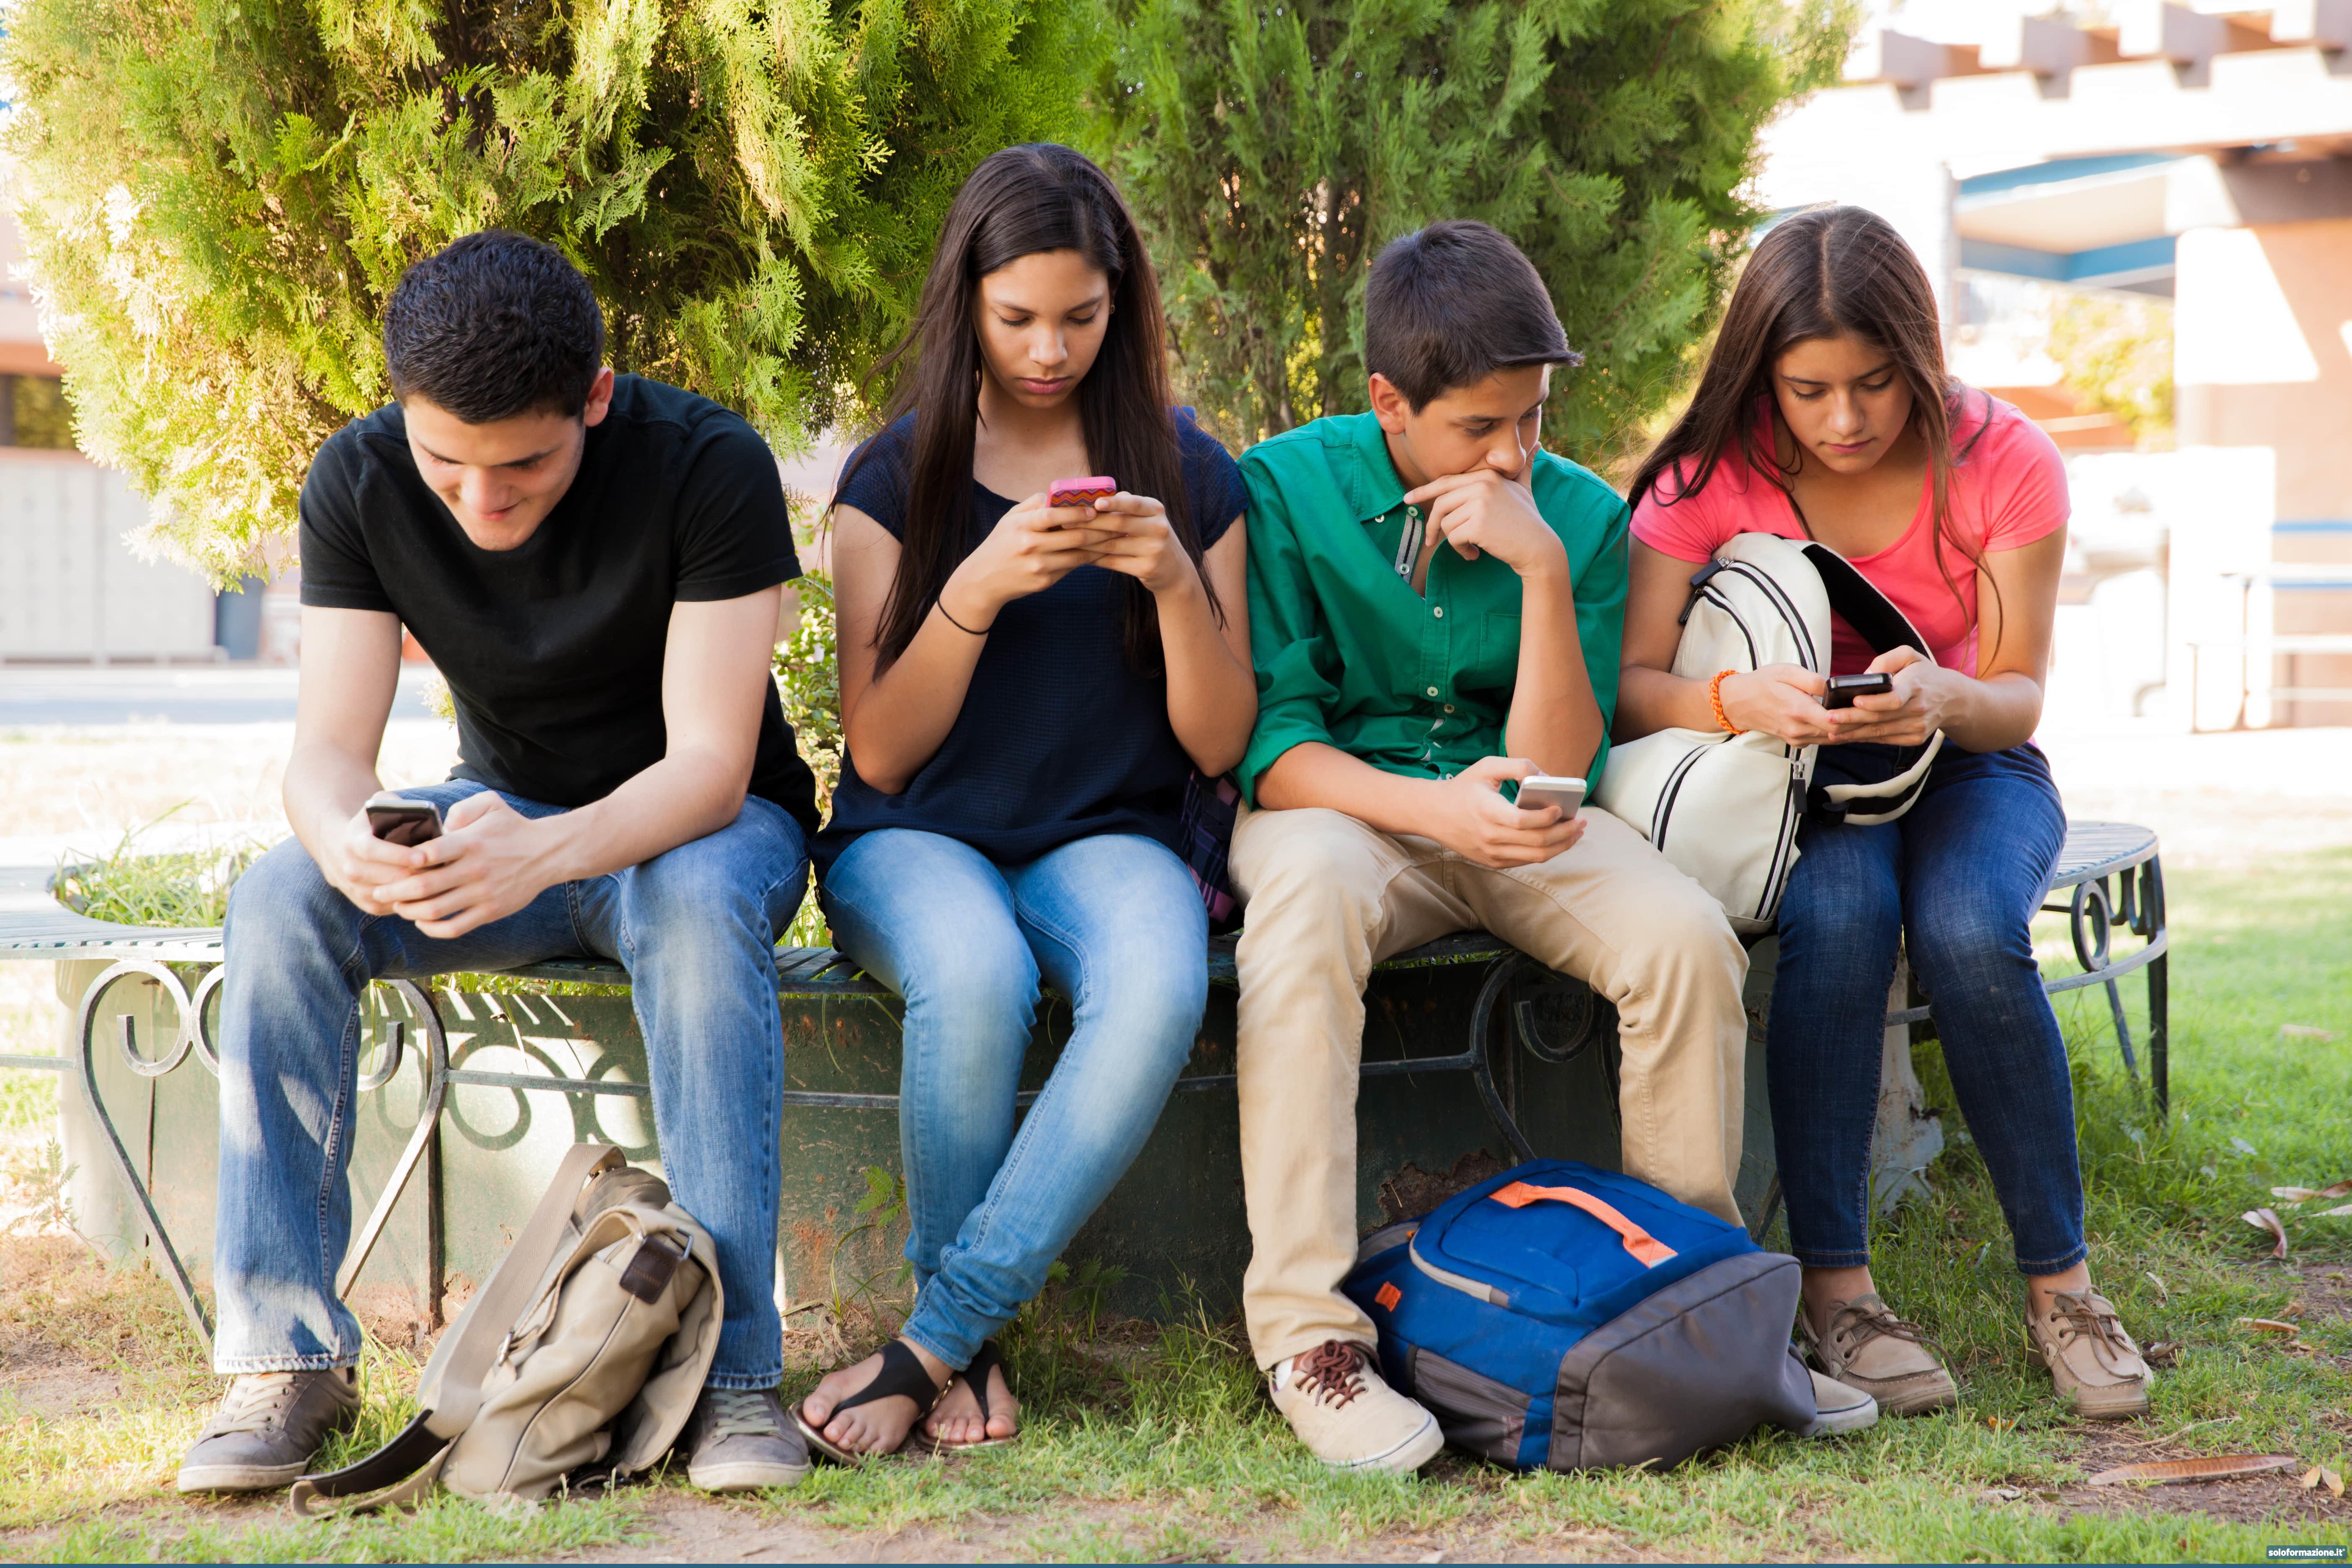 Studenti senza smartphone a scuola: in aumento le capacità relazionali e l' attività fisica